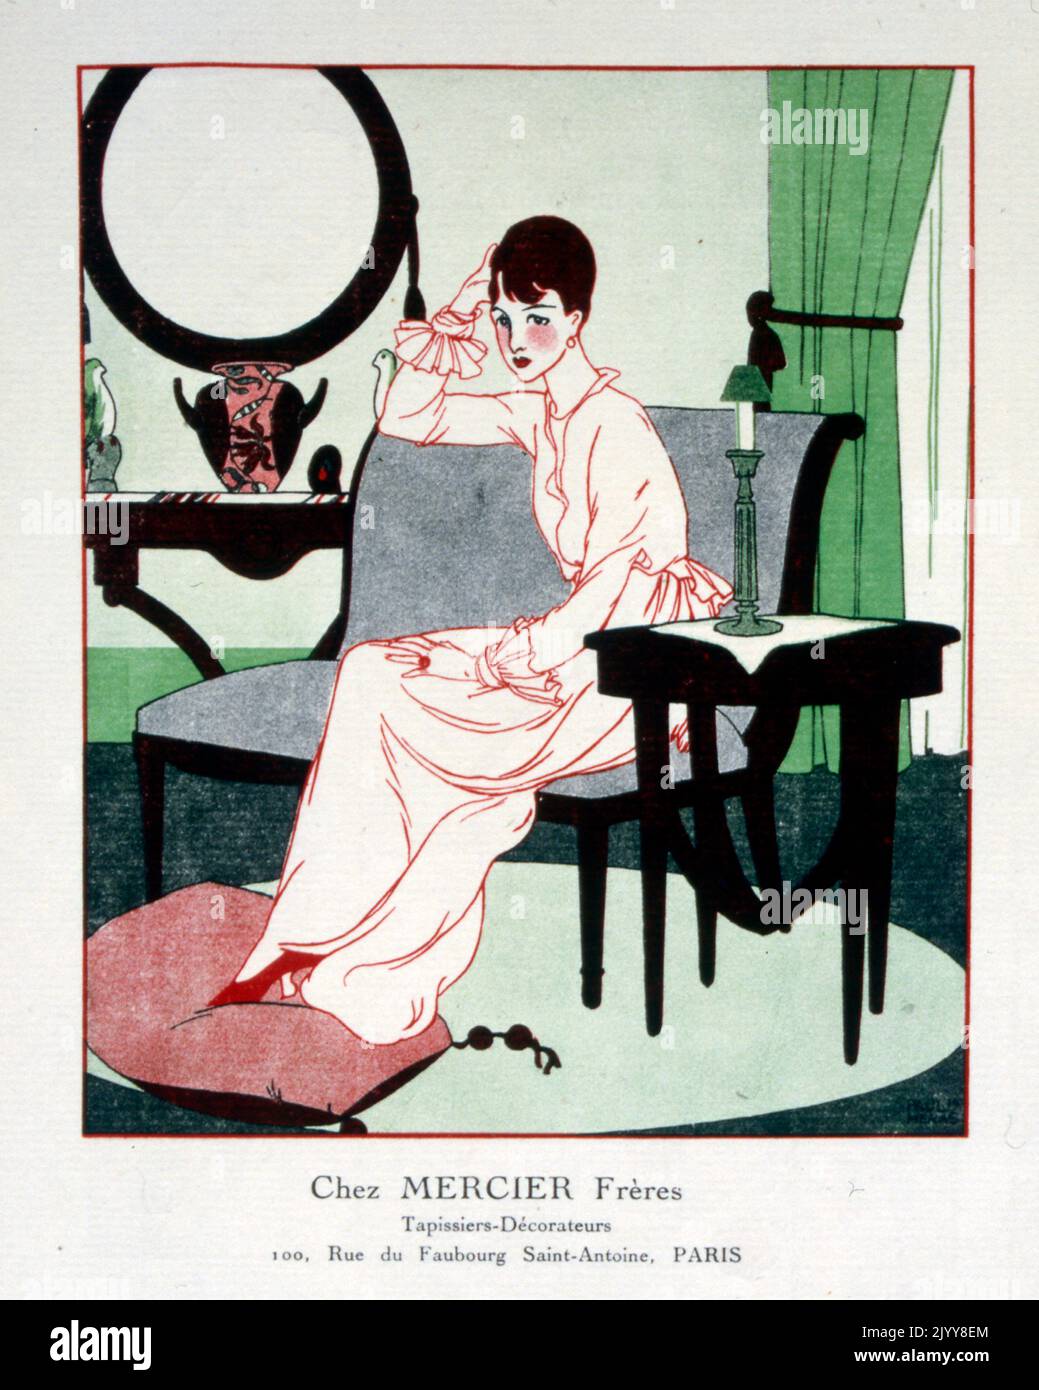 Eine farbige Zeichnung einer Dame, die mit ihren Füßen auf einem Poof auf einer Couch sitzt, mit dem Titel „chez Mercier Freres“. Innenarchitekten in der Rue Faubourg, Saint-Antoine, Paris. Stockfoto